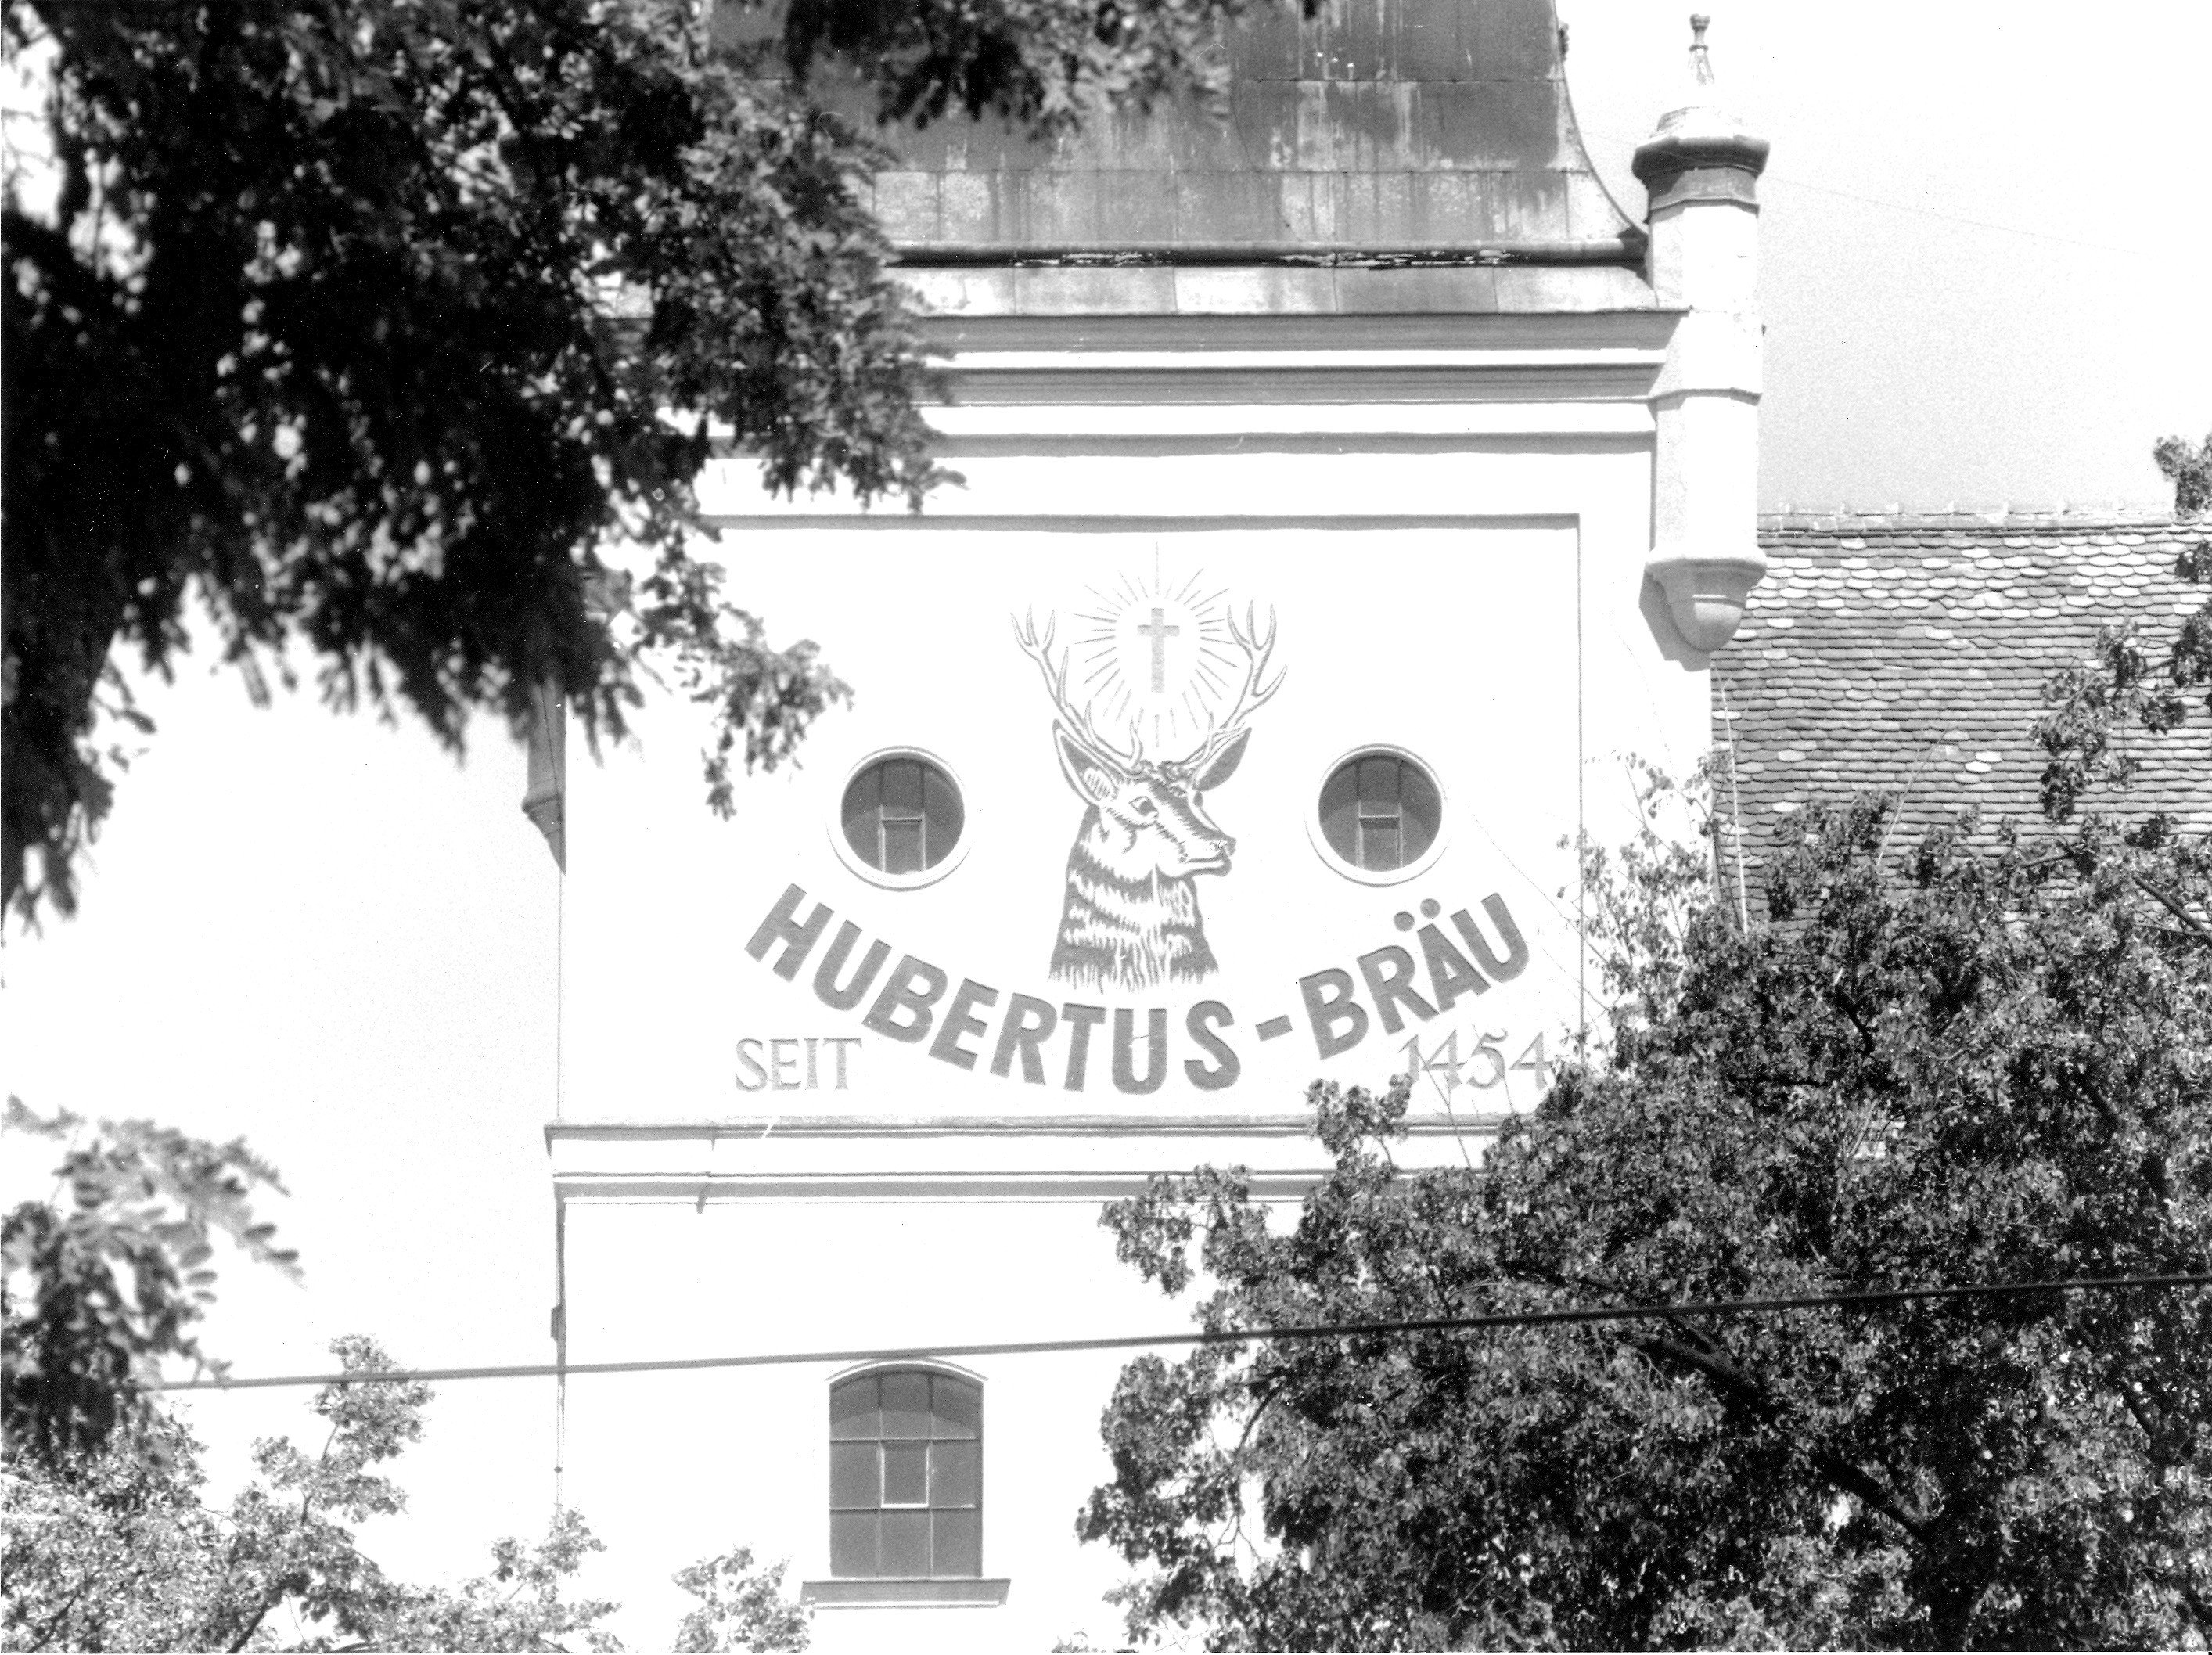 Hubertus Bräu Brauerei aus Österreich